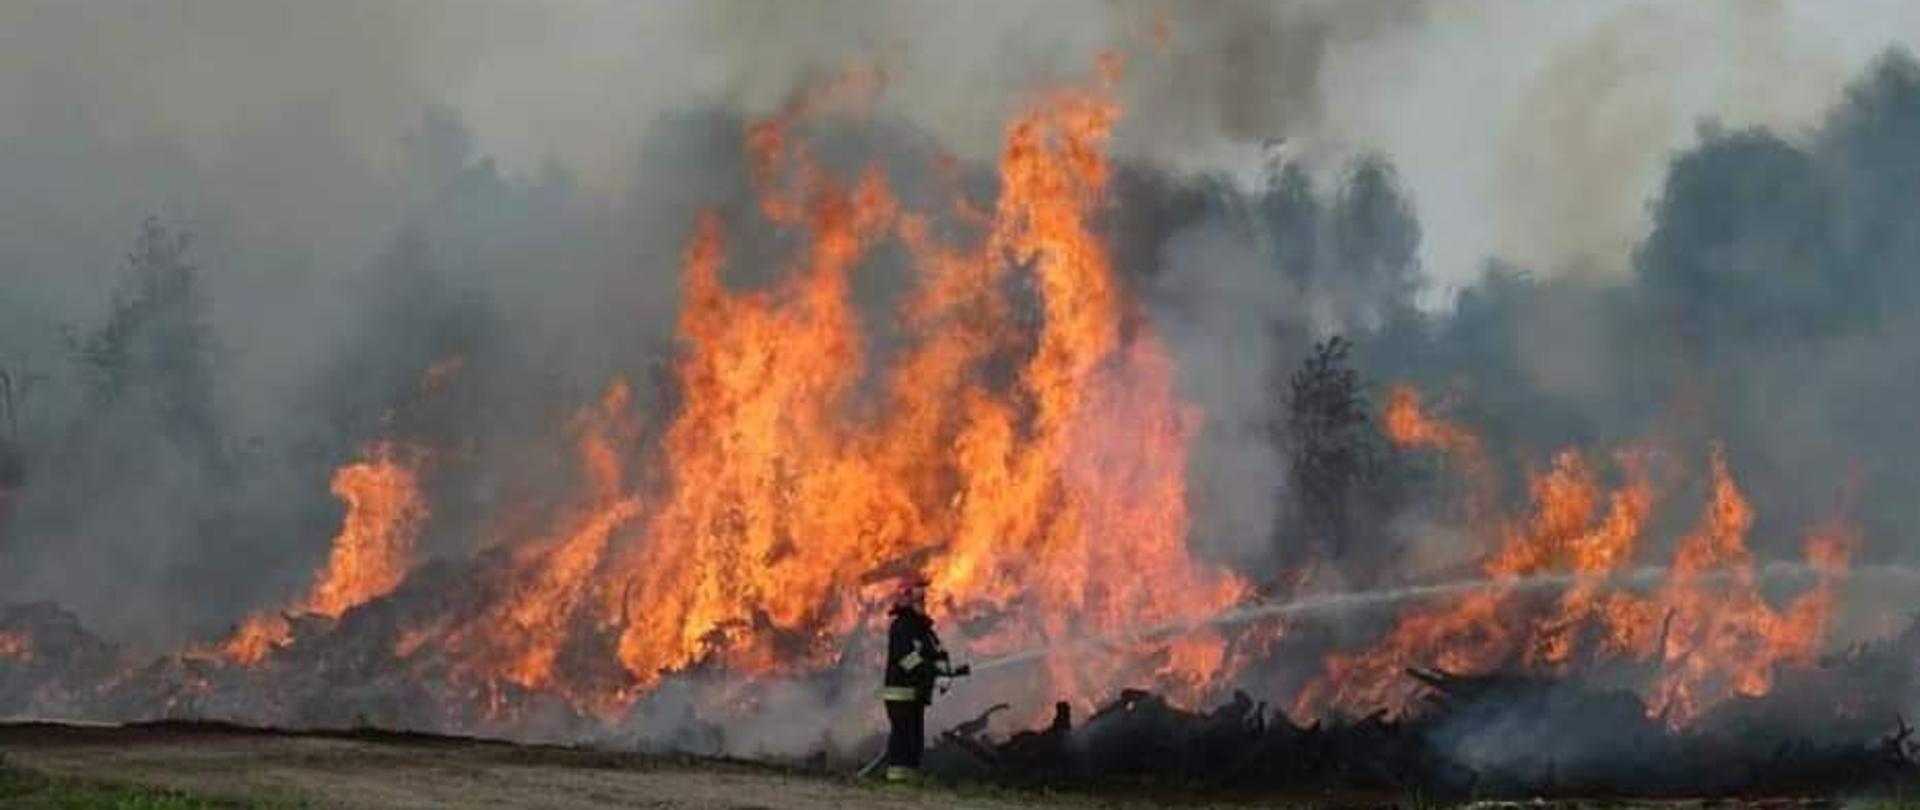 Zdjęcie przedstawia strażaka podejmującego działania gaśnicze na palące się torfowisko z korzeniami drzew